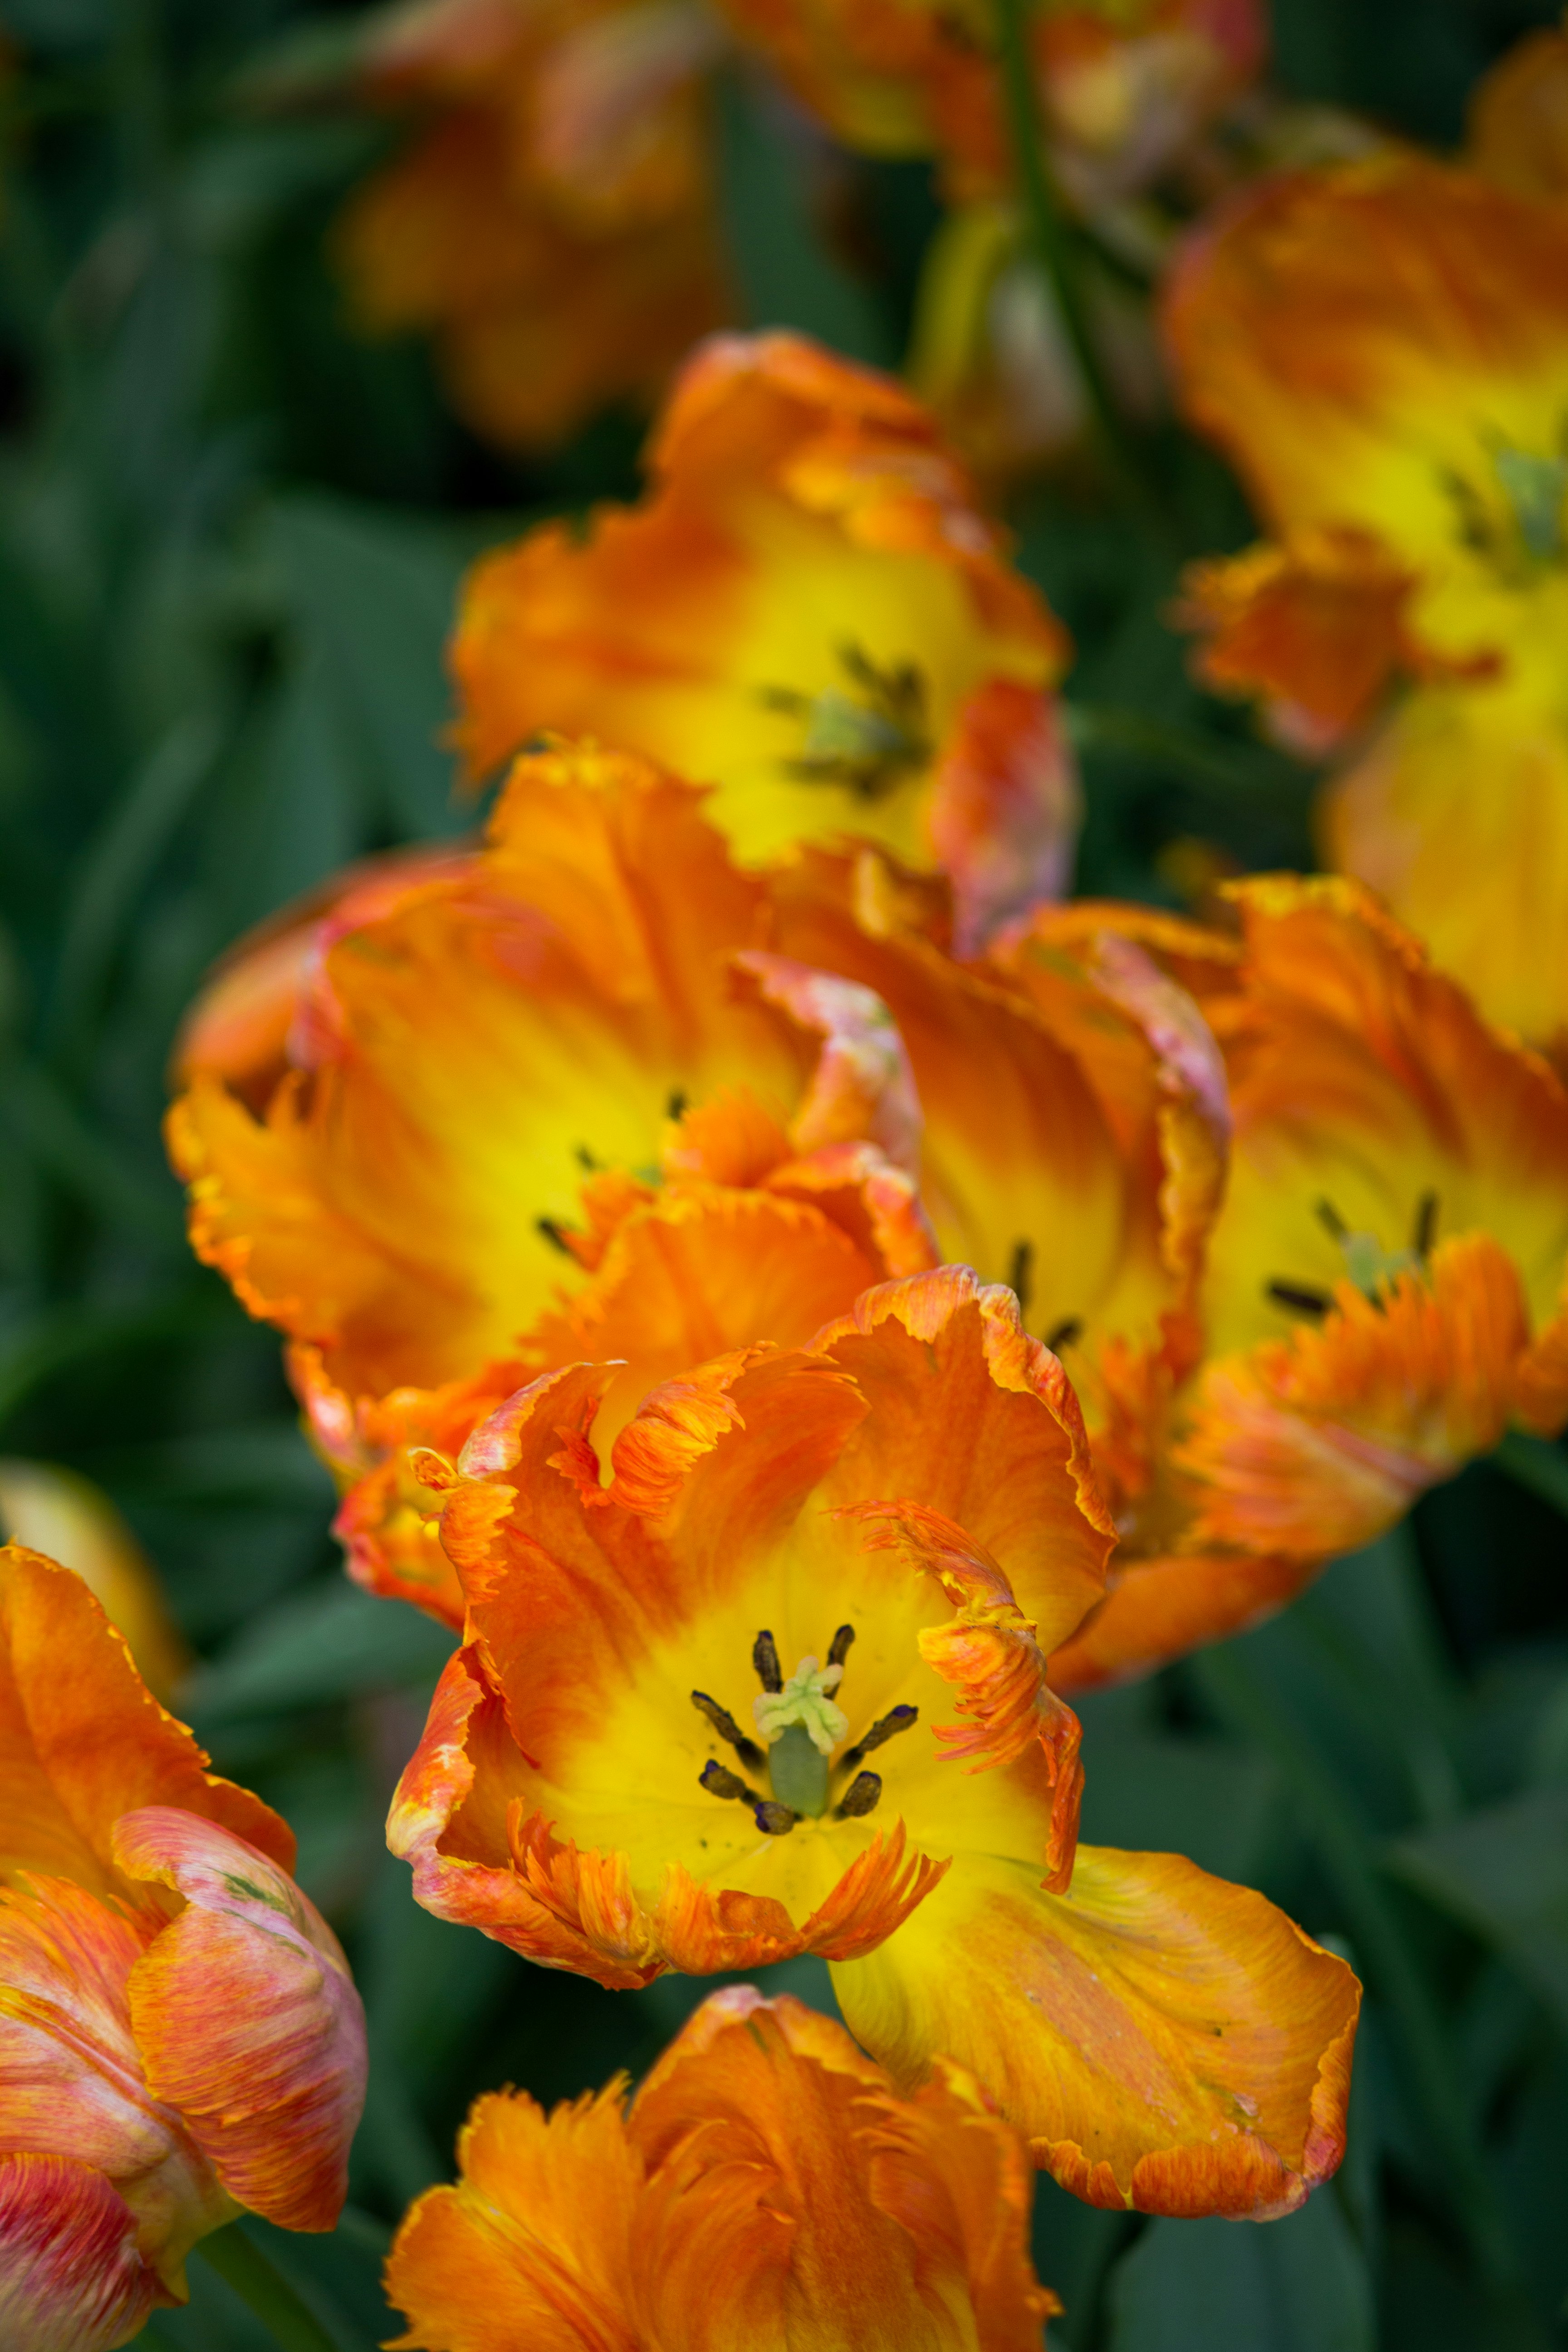 yellow and orange flower in tilt shift lens